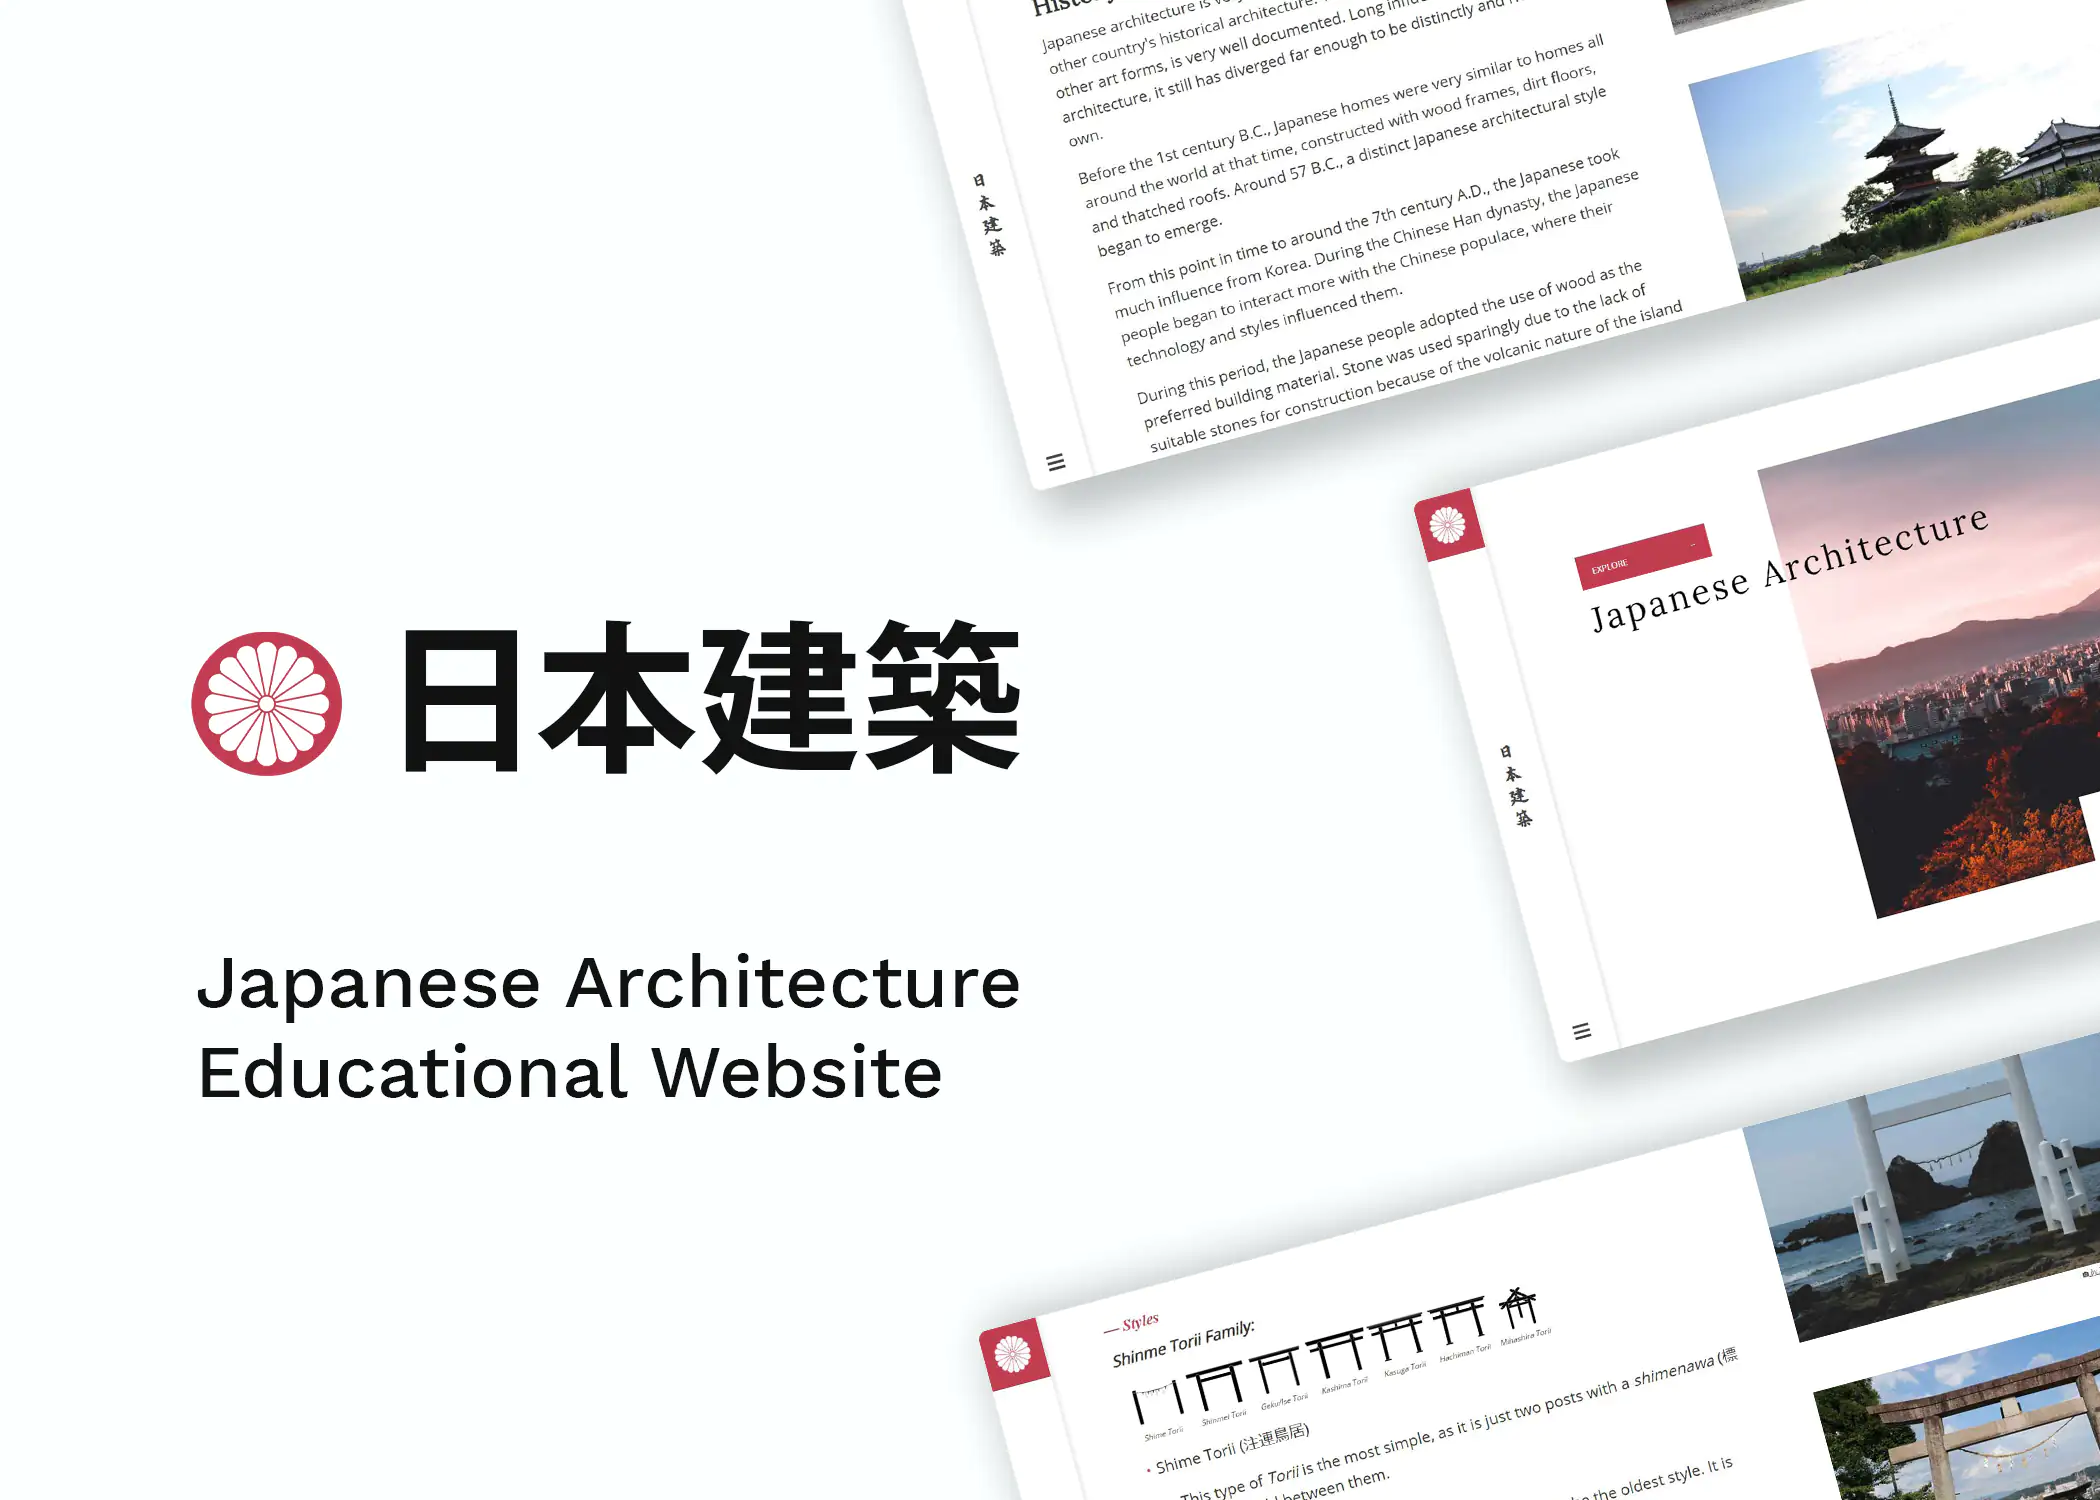 Japanese Architecture - japanese architecture educational website